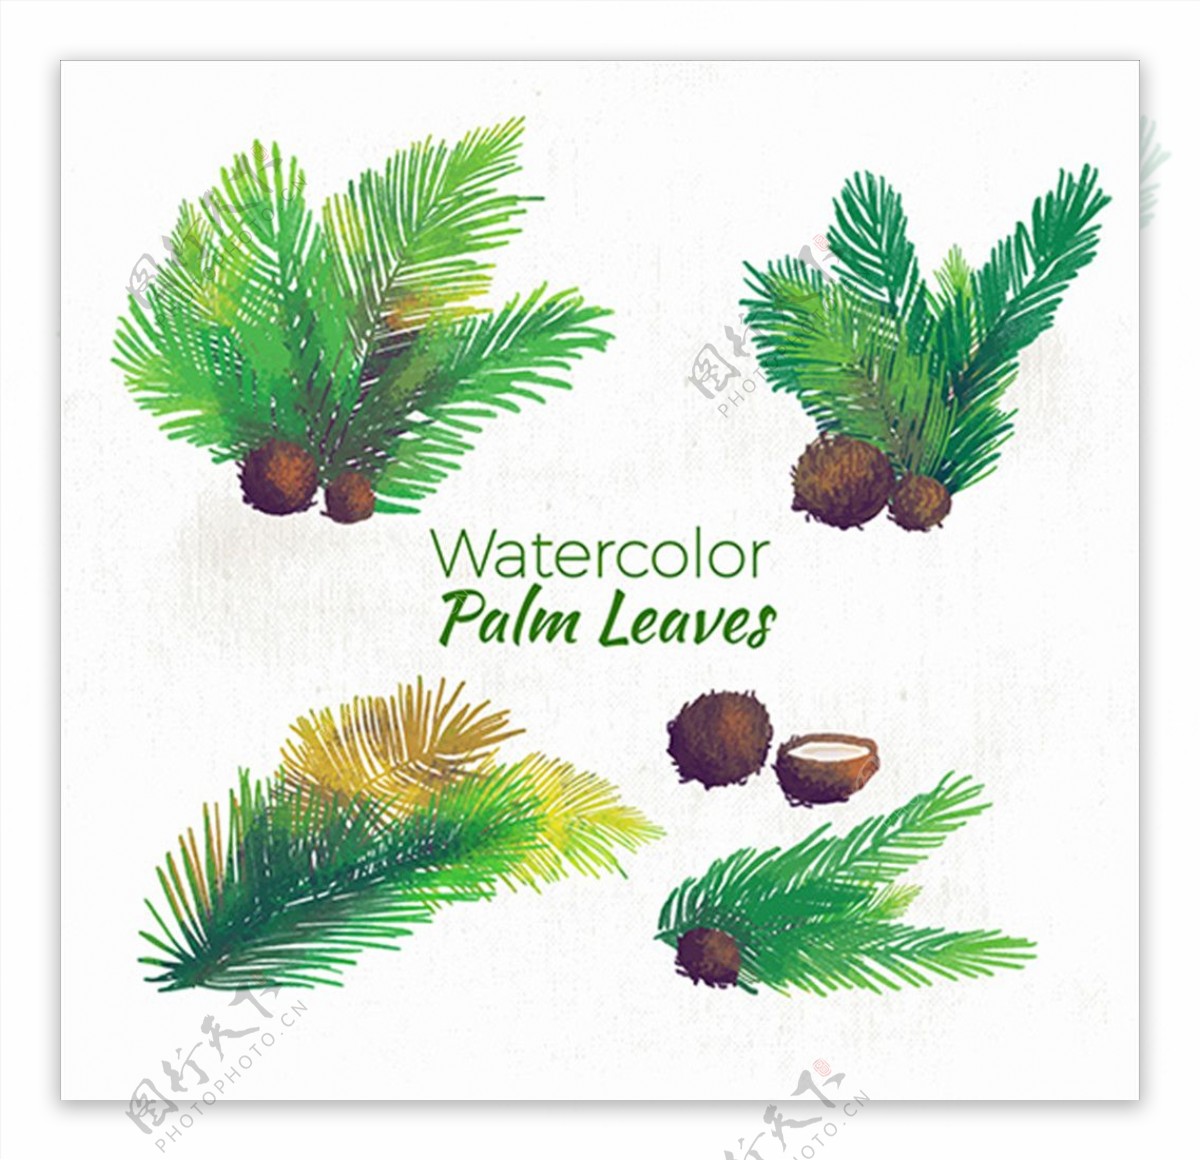 手绘水彩棕榈树和椰子